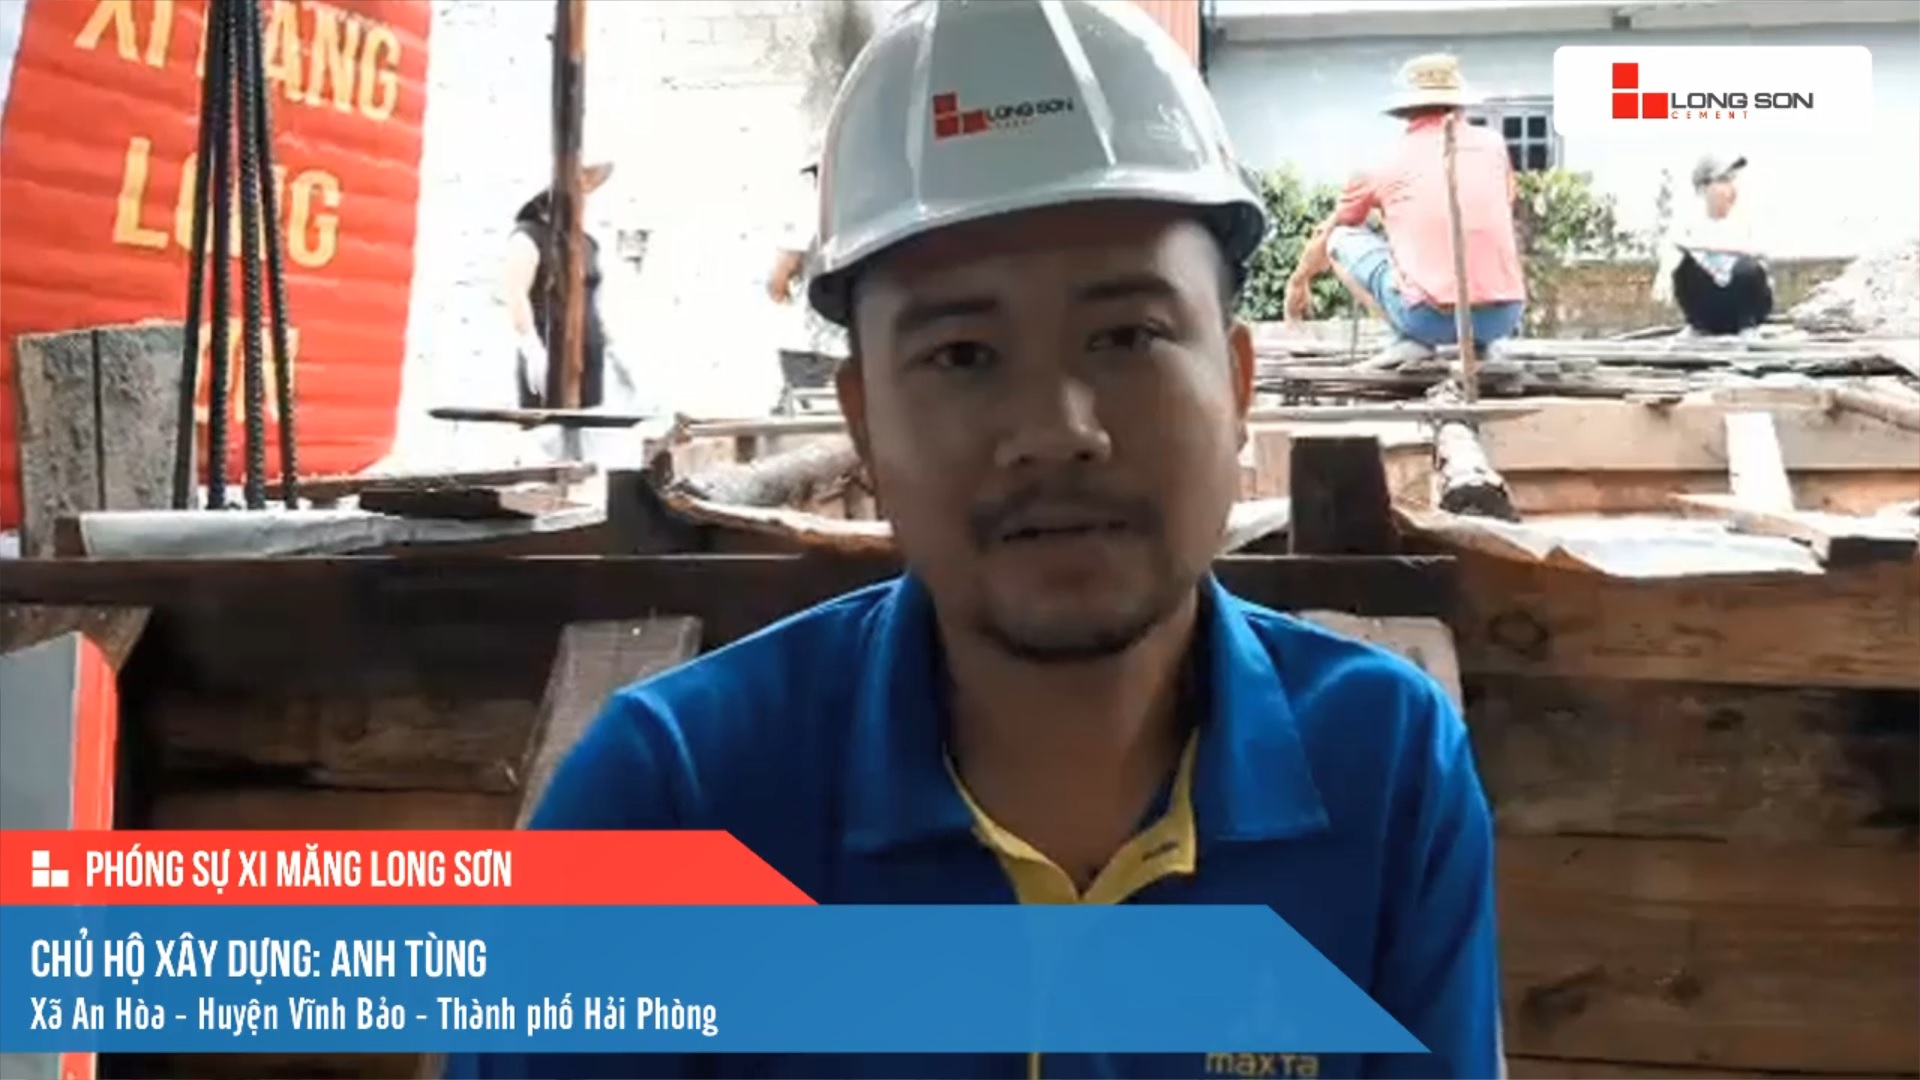 Phóng sự công trình sử dụng xi măng Long Sơn tại Hải Phòng ngày 24/09/2021